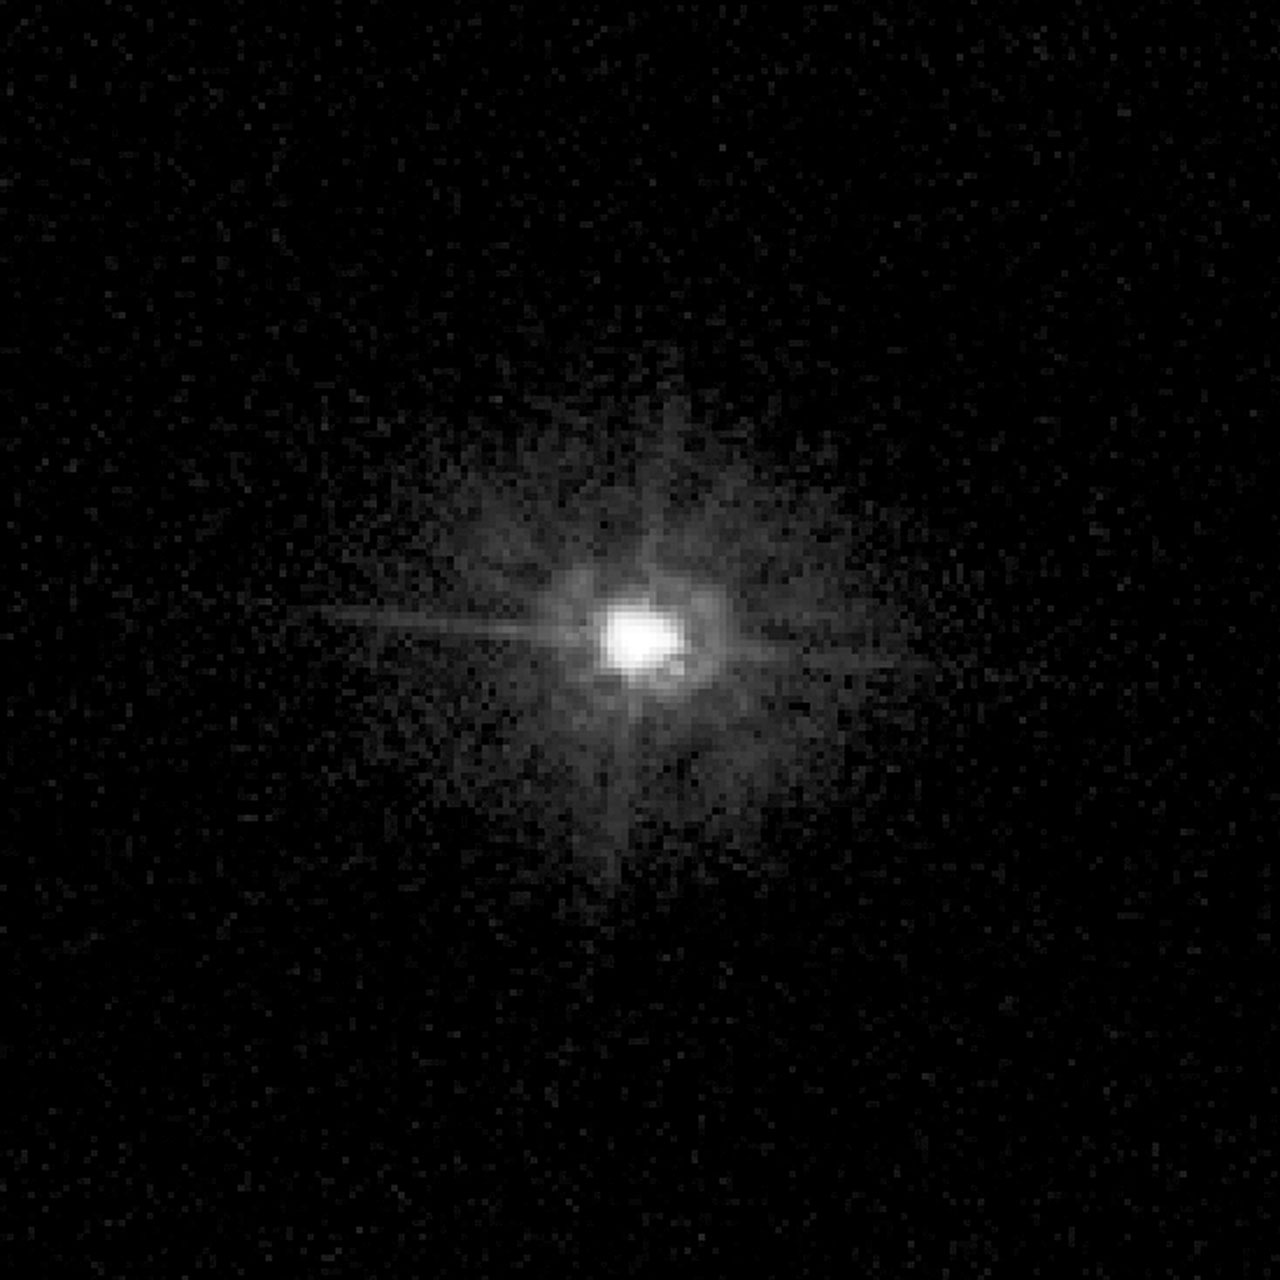 Фотошоп фото звезда. Полярная звезда Хаббл. Полярная звезда в телескоп. Полярная звезда снимок Хаббла. Полярная звезда через телескоп.